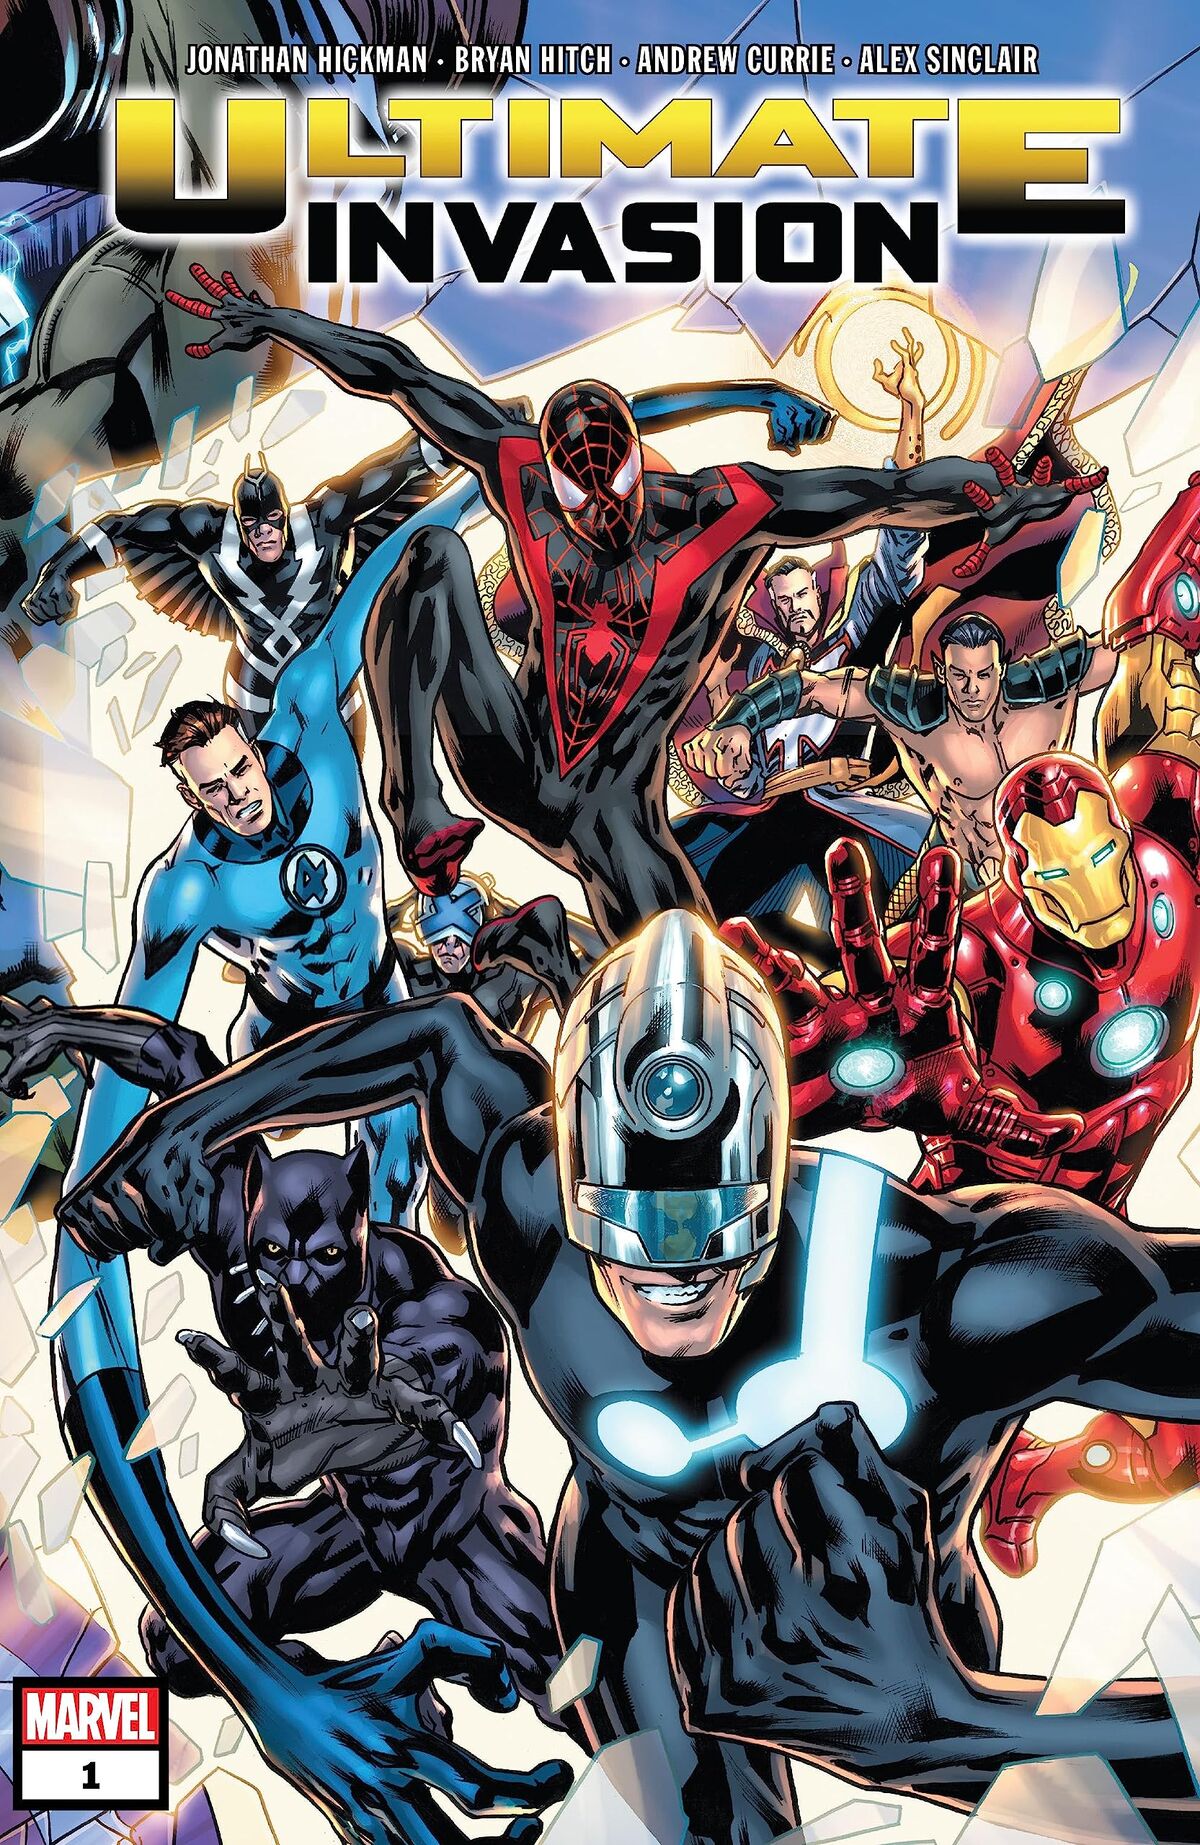 September 27's New Marvel Comics: The Full List